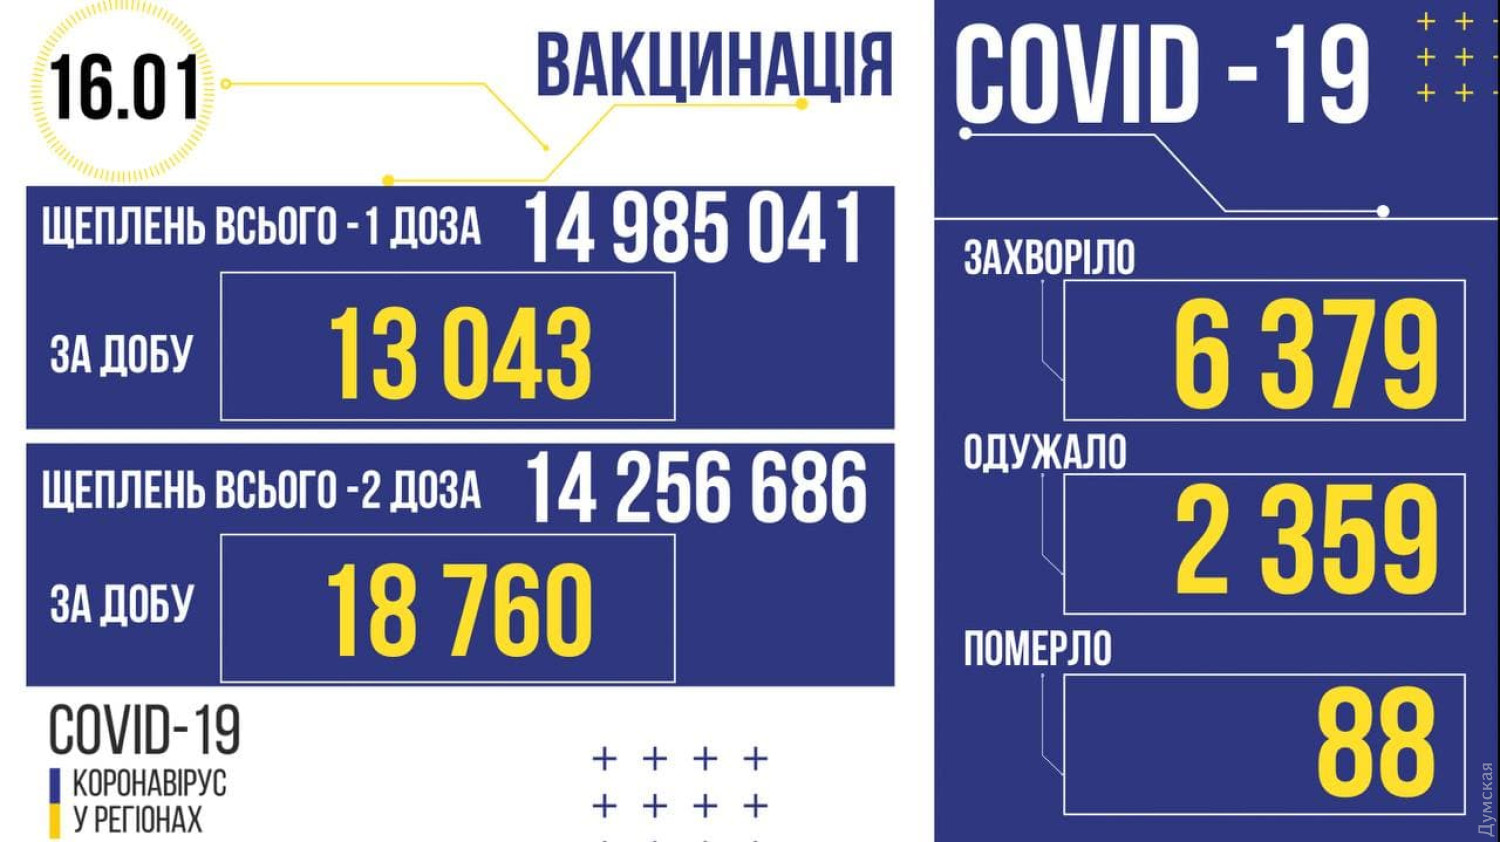 Ukraine: Trong ngày cuối, ghi nhận 6379 ca lây nhiễm mới covid, 88 ca tử vong